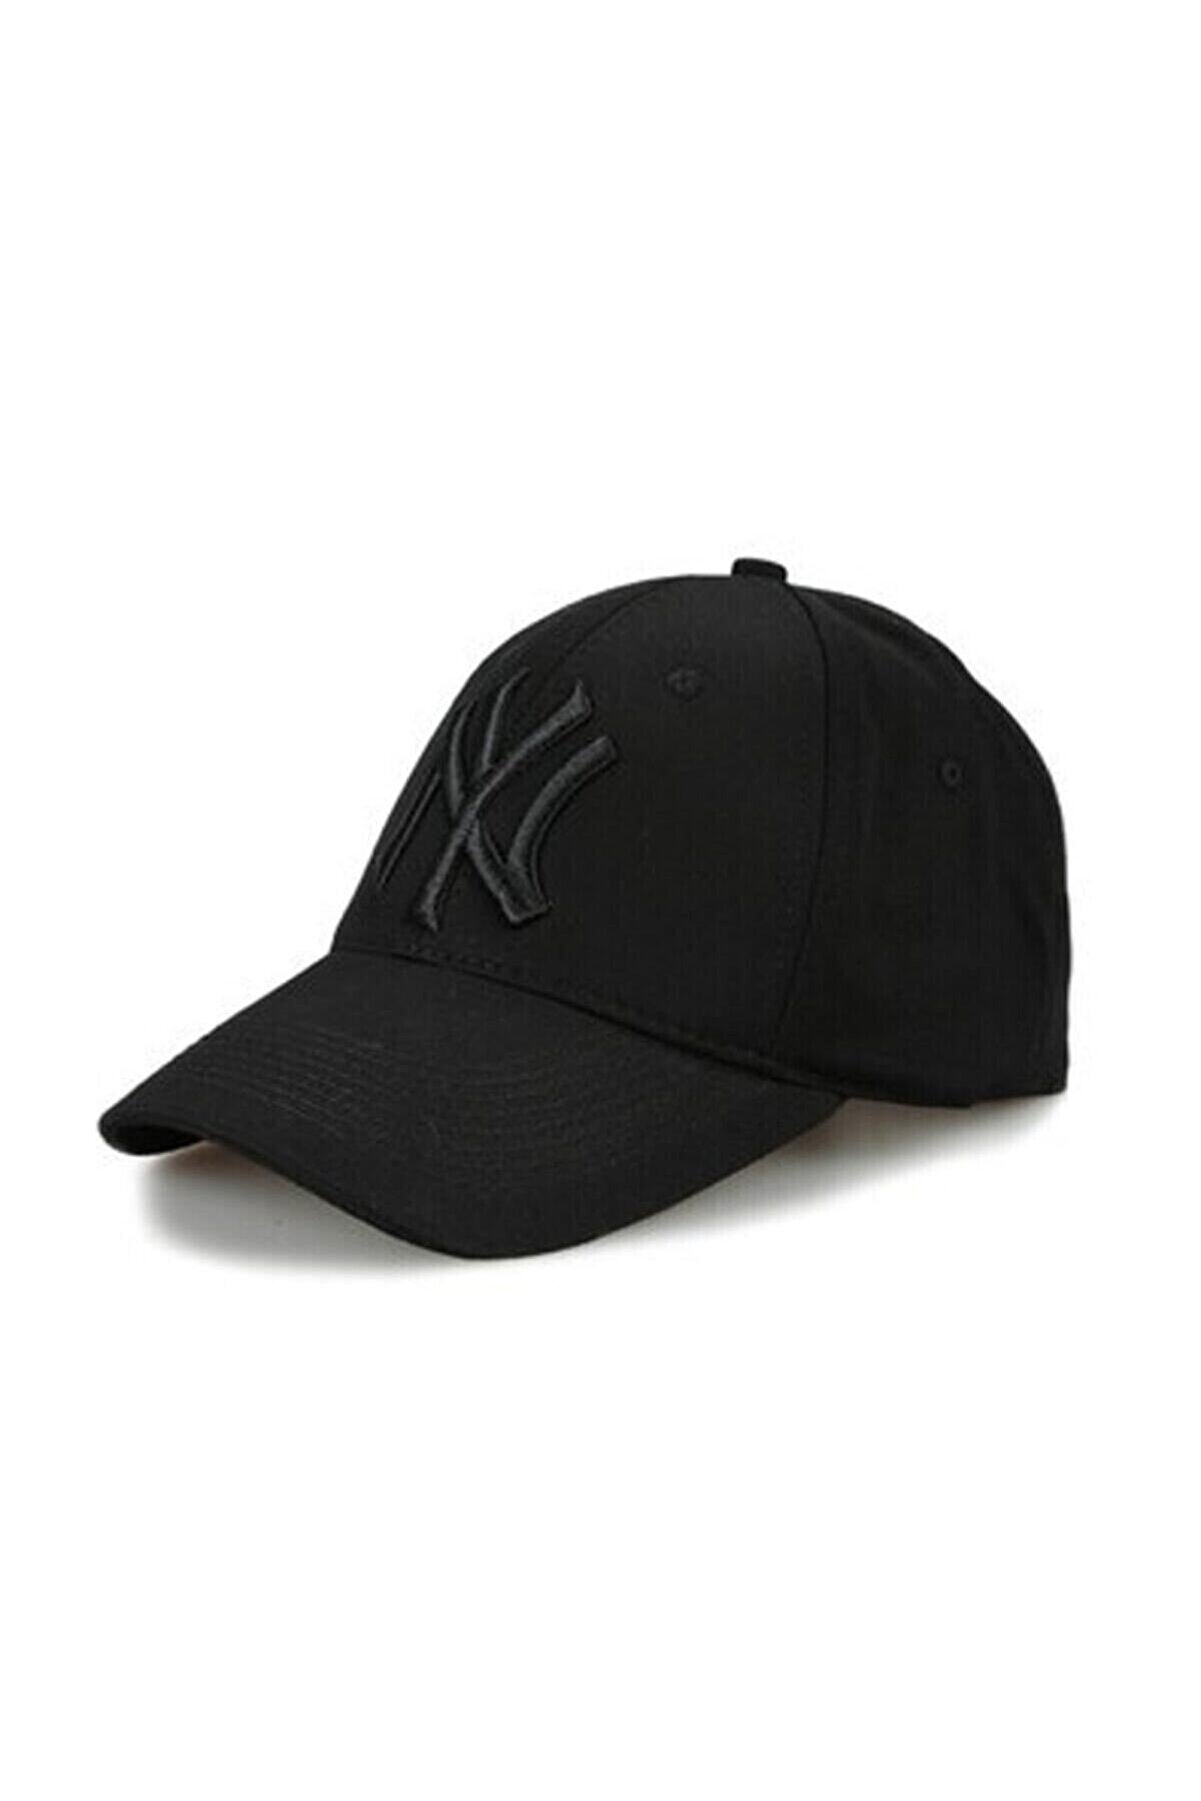 CosmoOutlet Ny New York Nakışlı Arkasından Ayarlanabilir Unisex Siyah Pamuklu Beyzbol Şapka